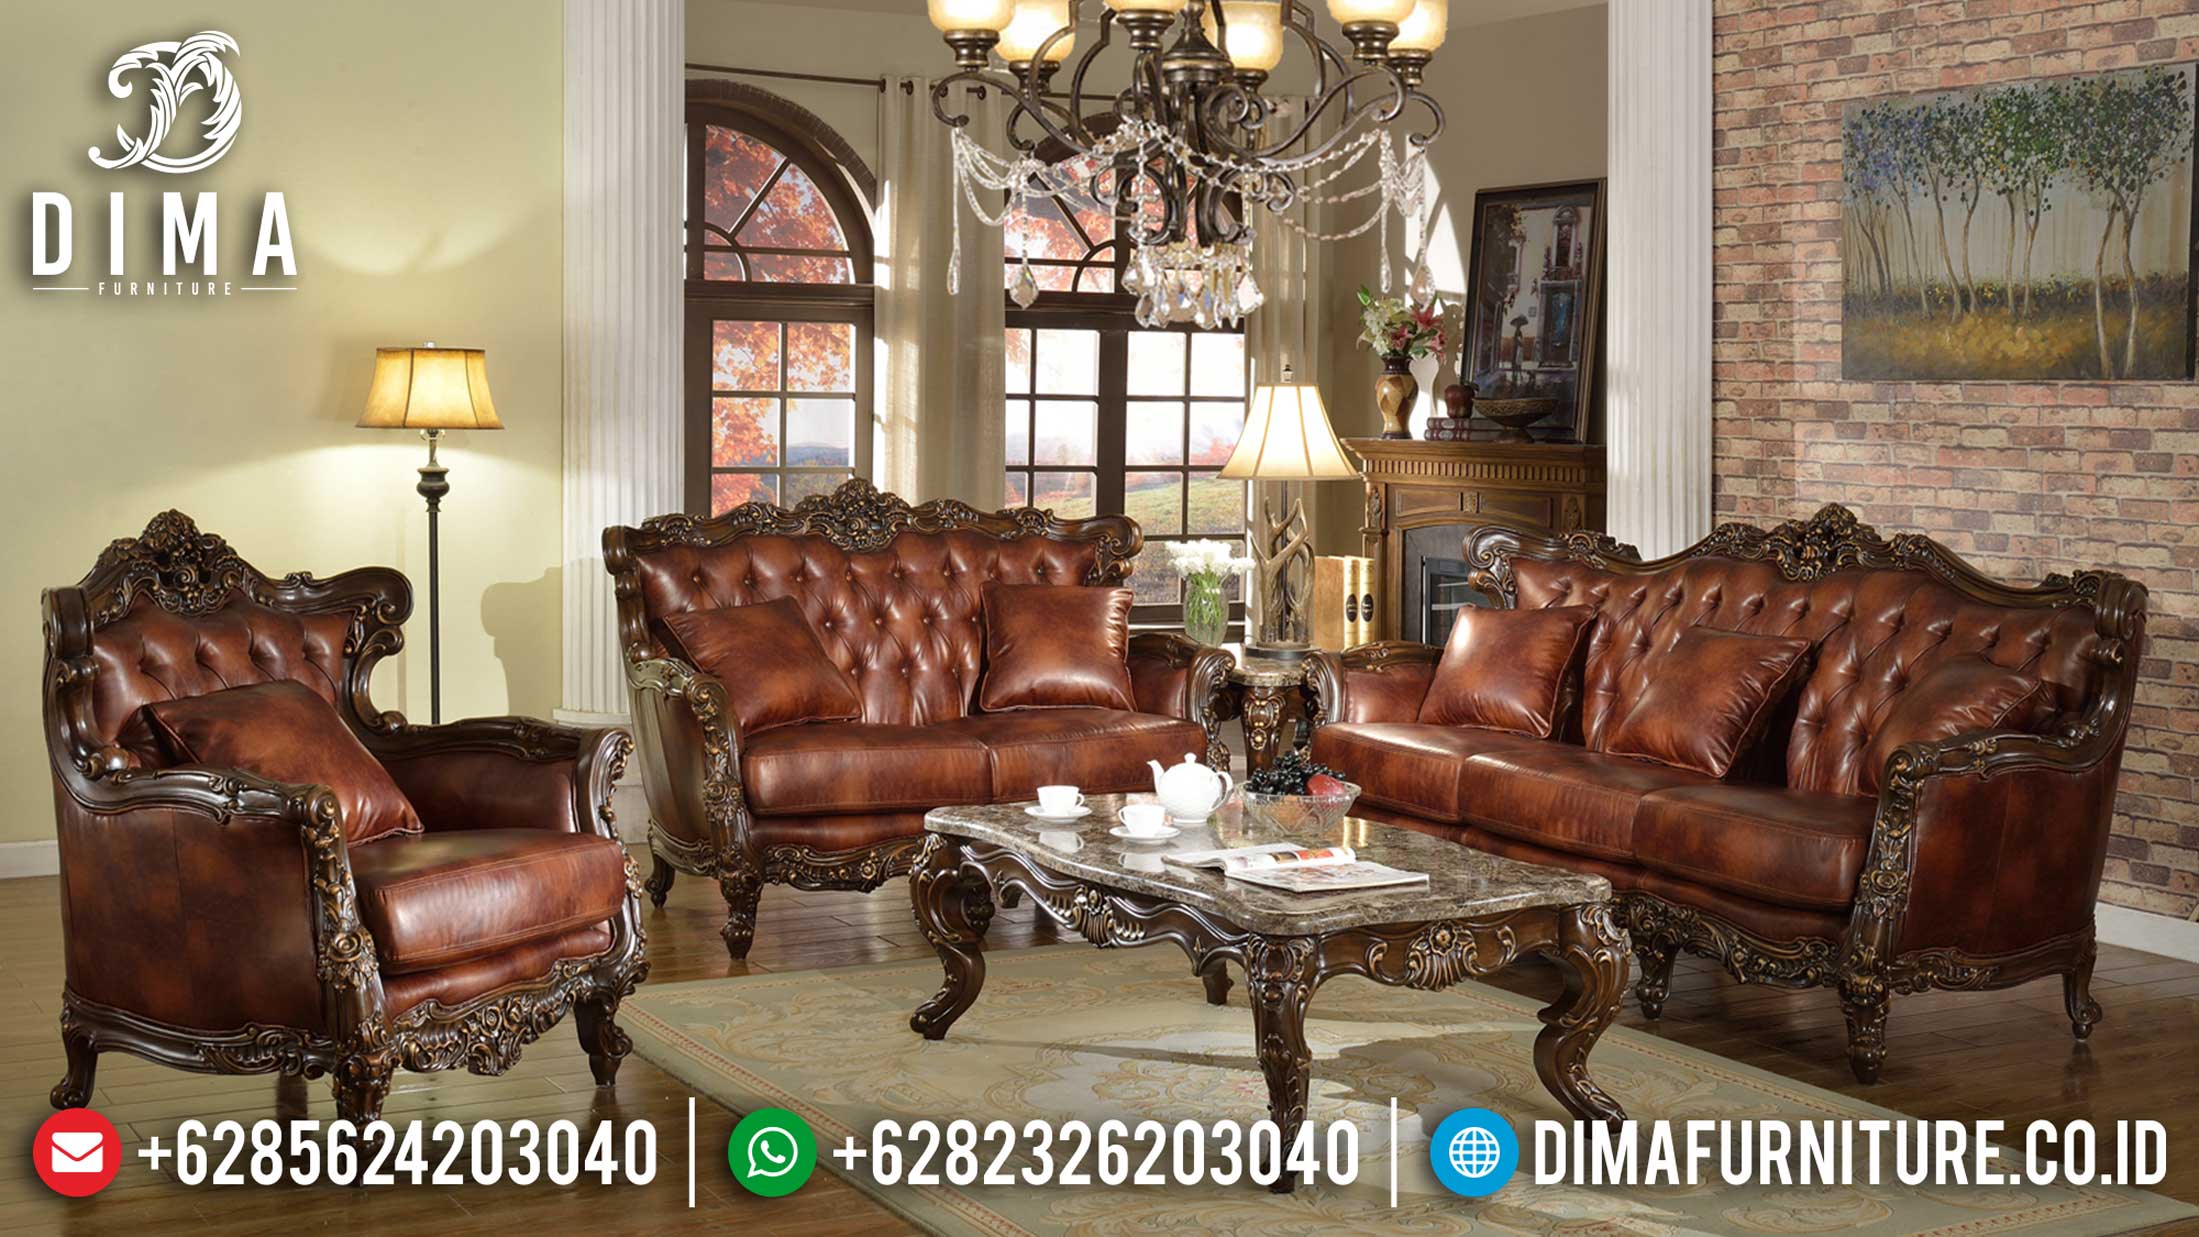 Jual Sofa Mewah Ruang Tamu Luxury Classic Harga Terjangkau New Desain ST-0977